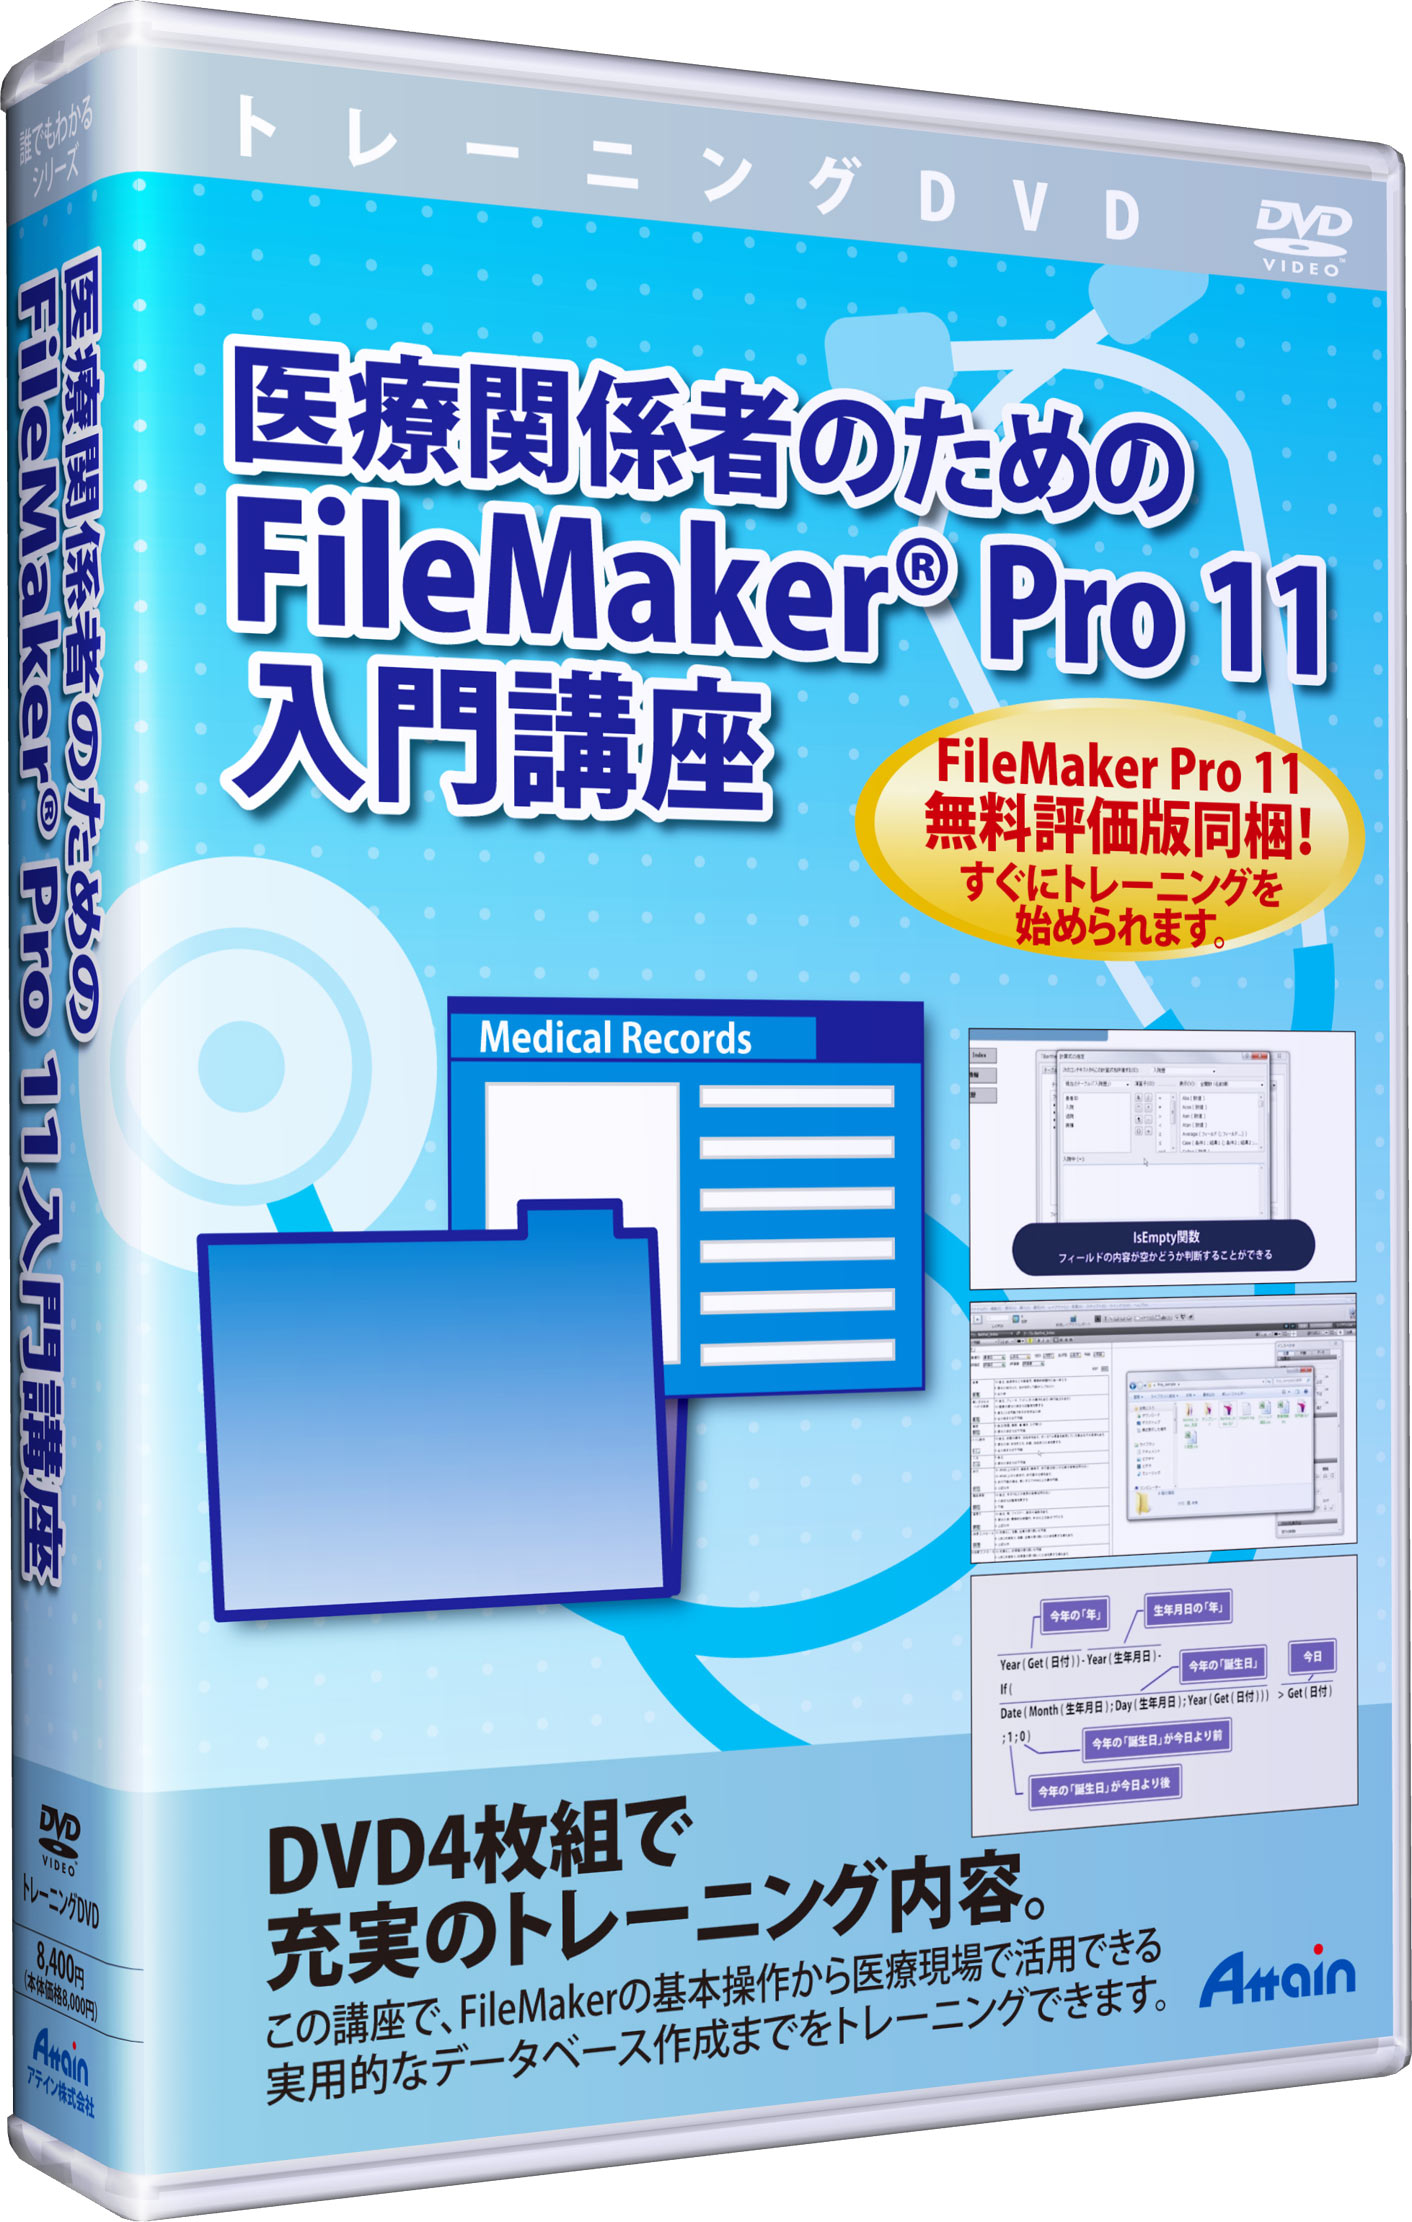 「医療関係者のためのFileMaker® Pro 11 入門講座」ＤＶＤ教材、販売開始